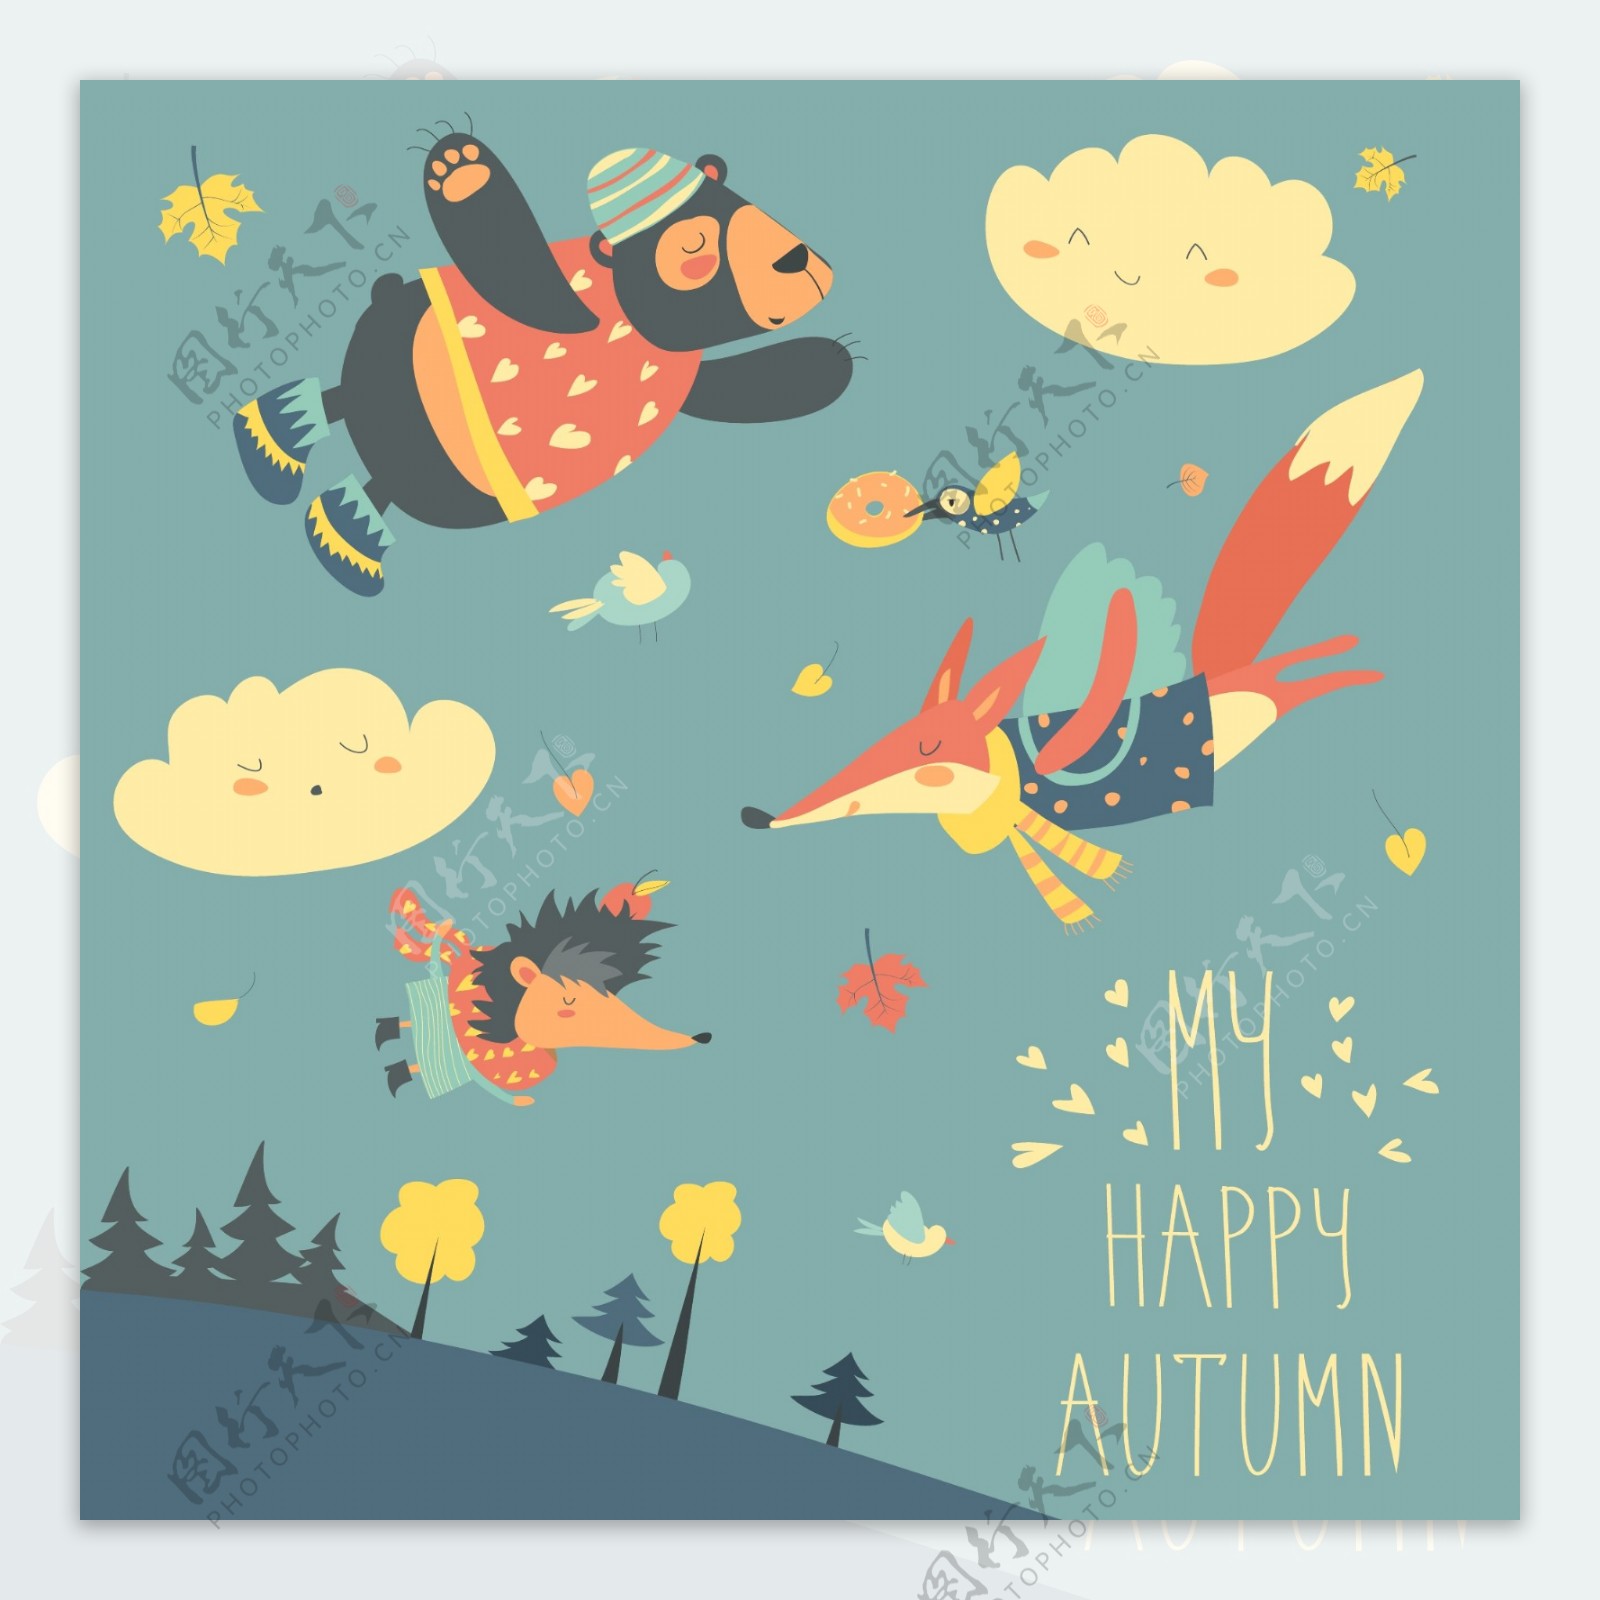 可爱的动物和秋天的叶子在天空中飞翔